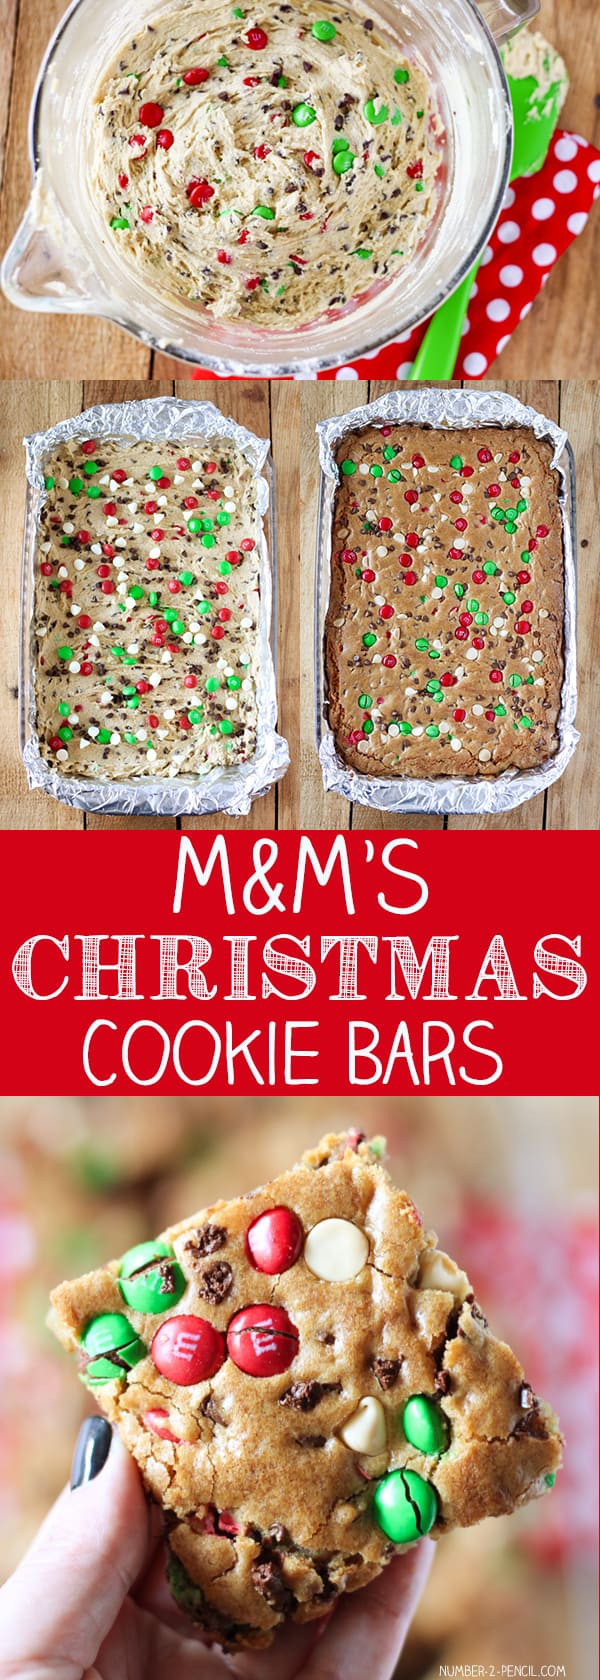 Pinterest Christmas Cookies
 Top 5 Ultimate Christmas Cookies According to Pinterest